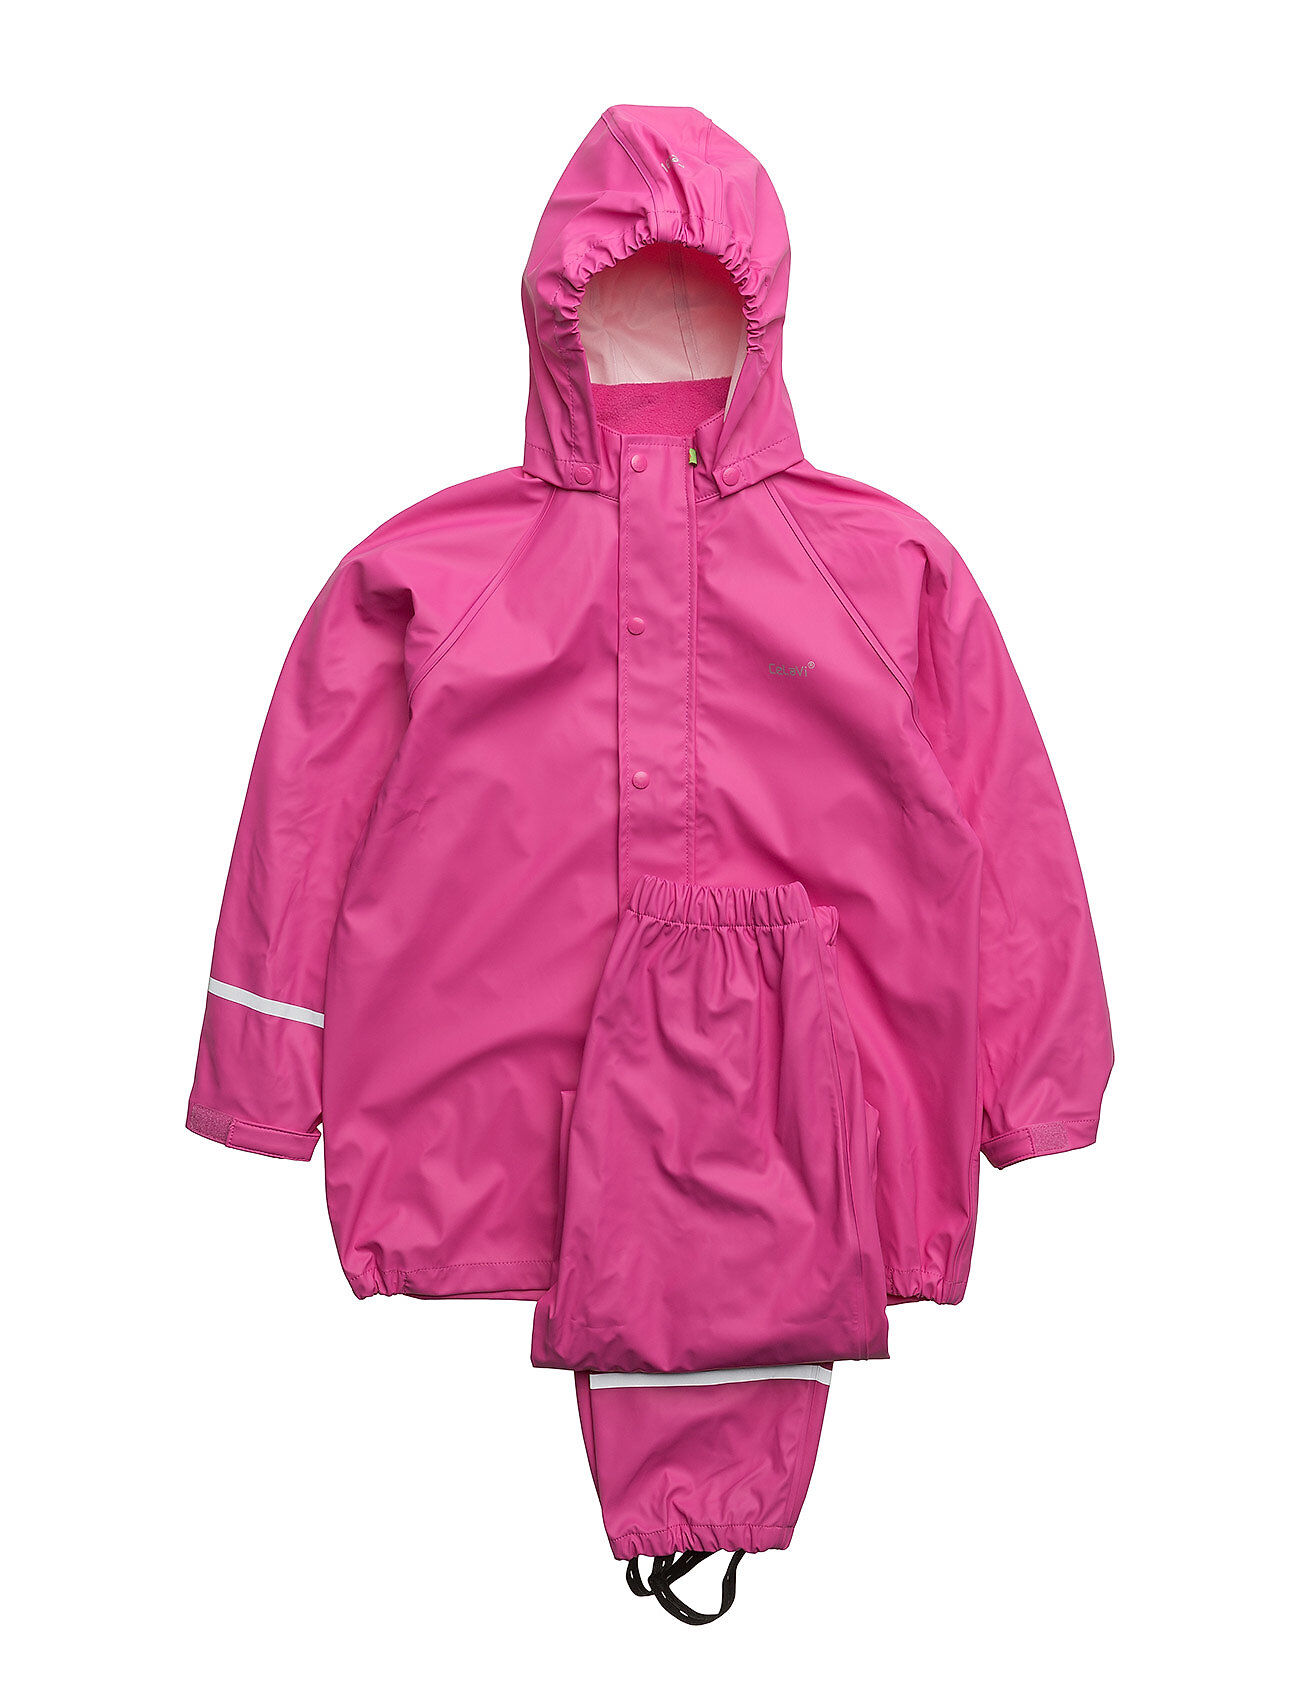 CeLaVi Basci Rainwear Set, Solid Outerwear Coveralls Rainwear Sets & Coveralls Rosa CeLaVi